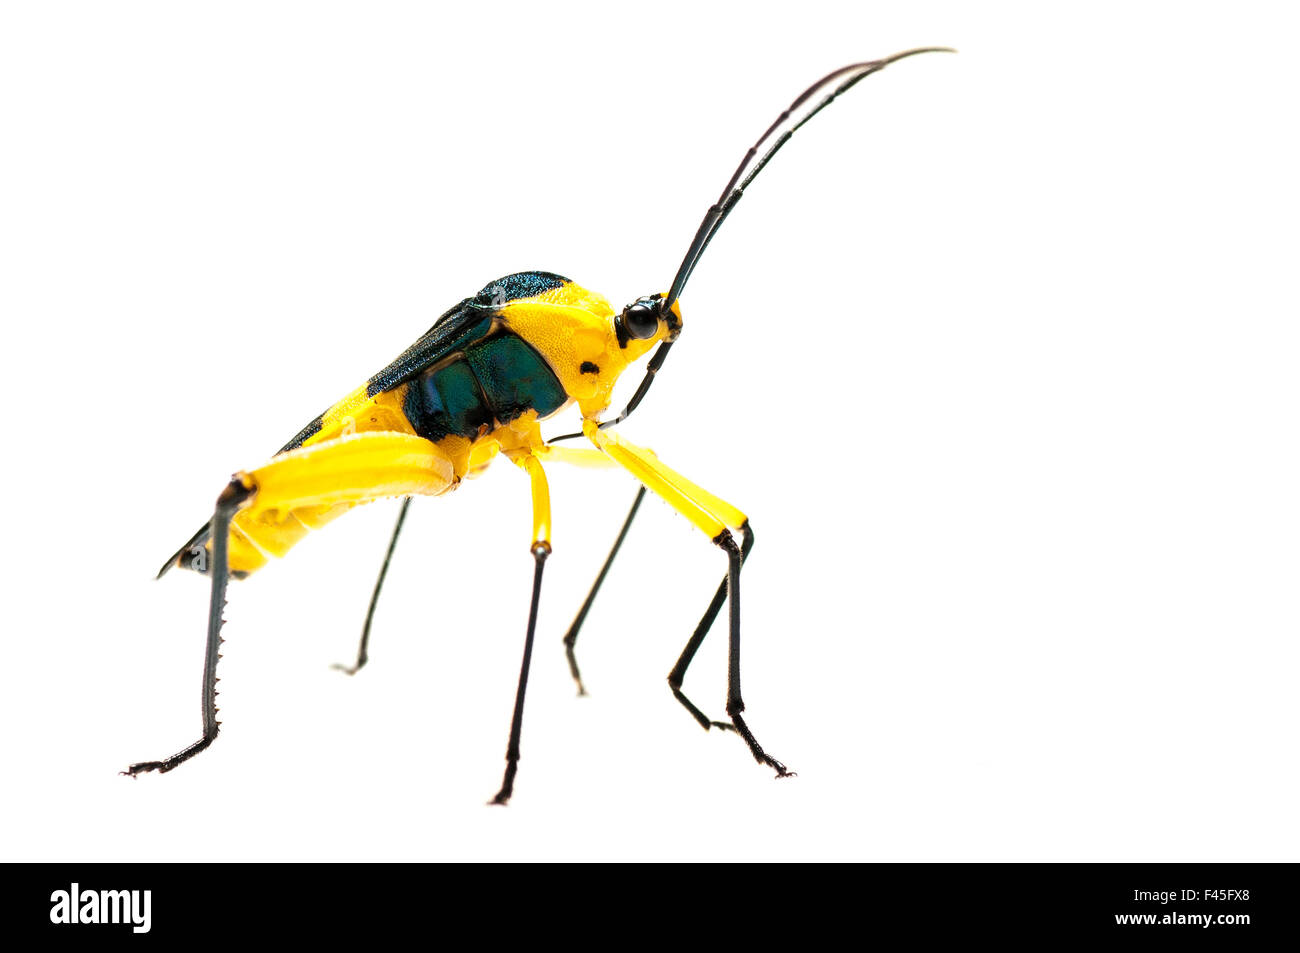 Leaf-footed bug (Coreidae) Iwokrama, Guyana. Meetyourneighbours.net project Stock Photo